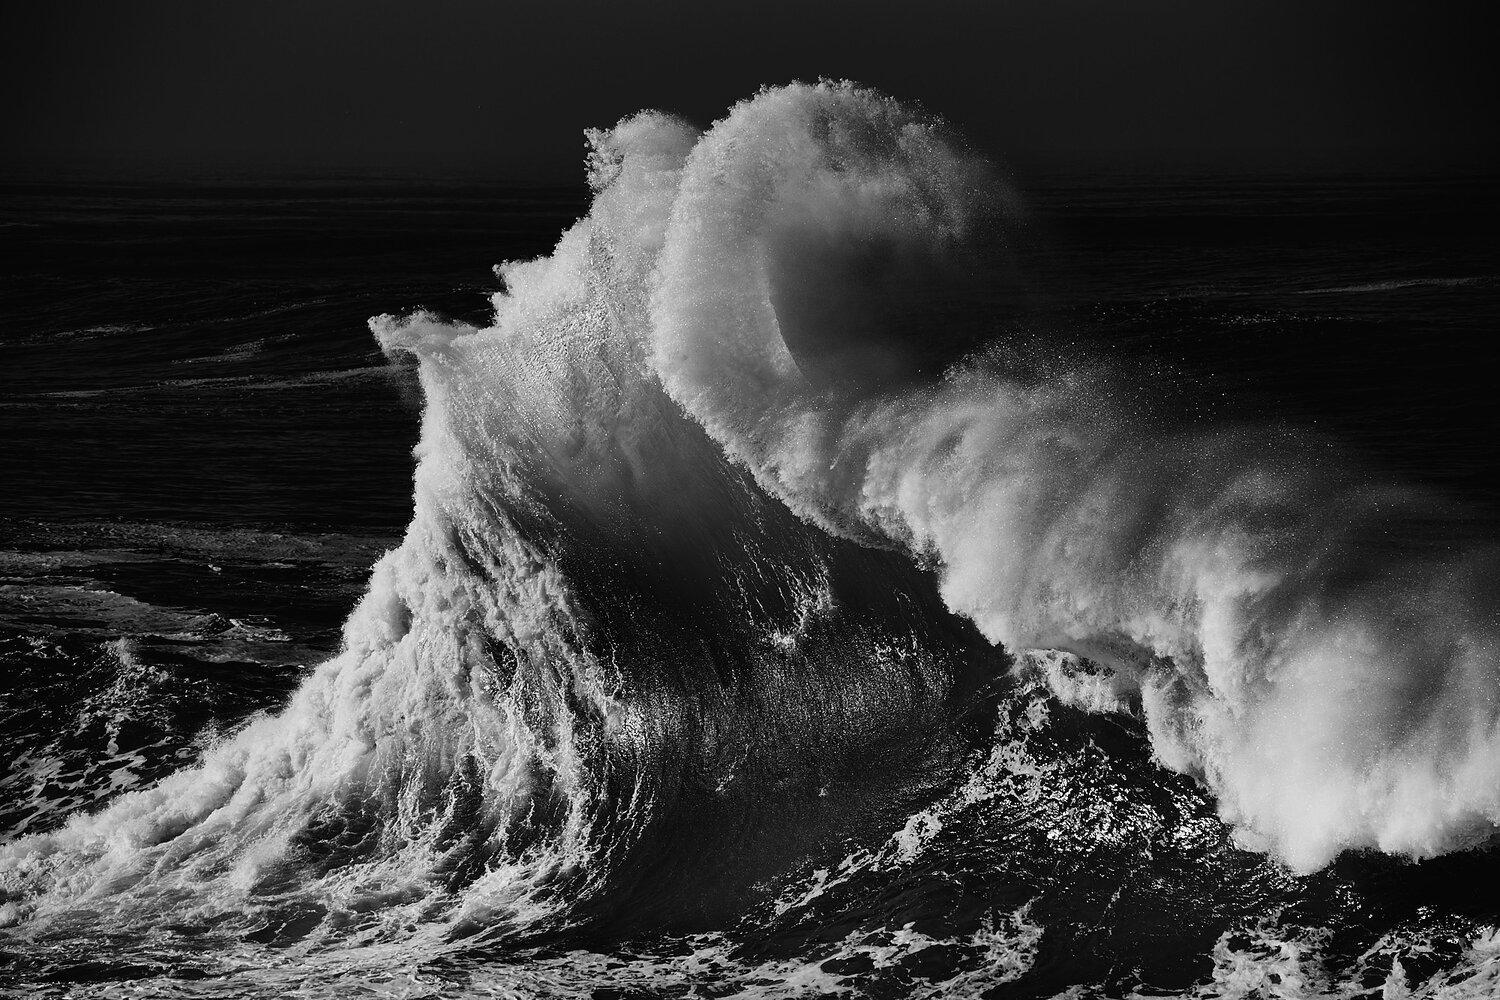 Alessandro Puccinelli Landscape Photograph - Mare 432 Seascape black and white photograph